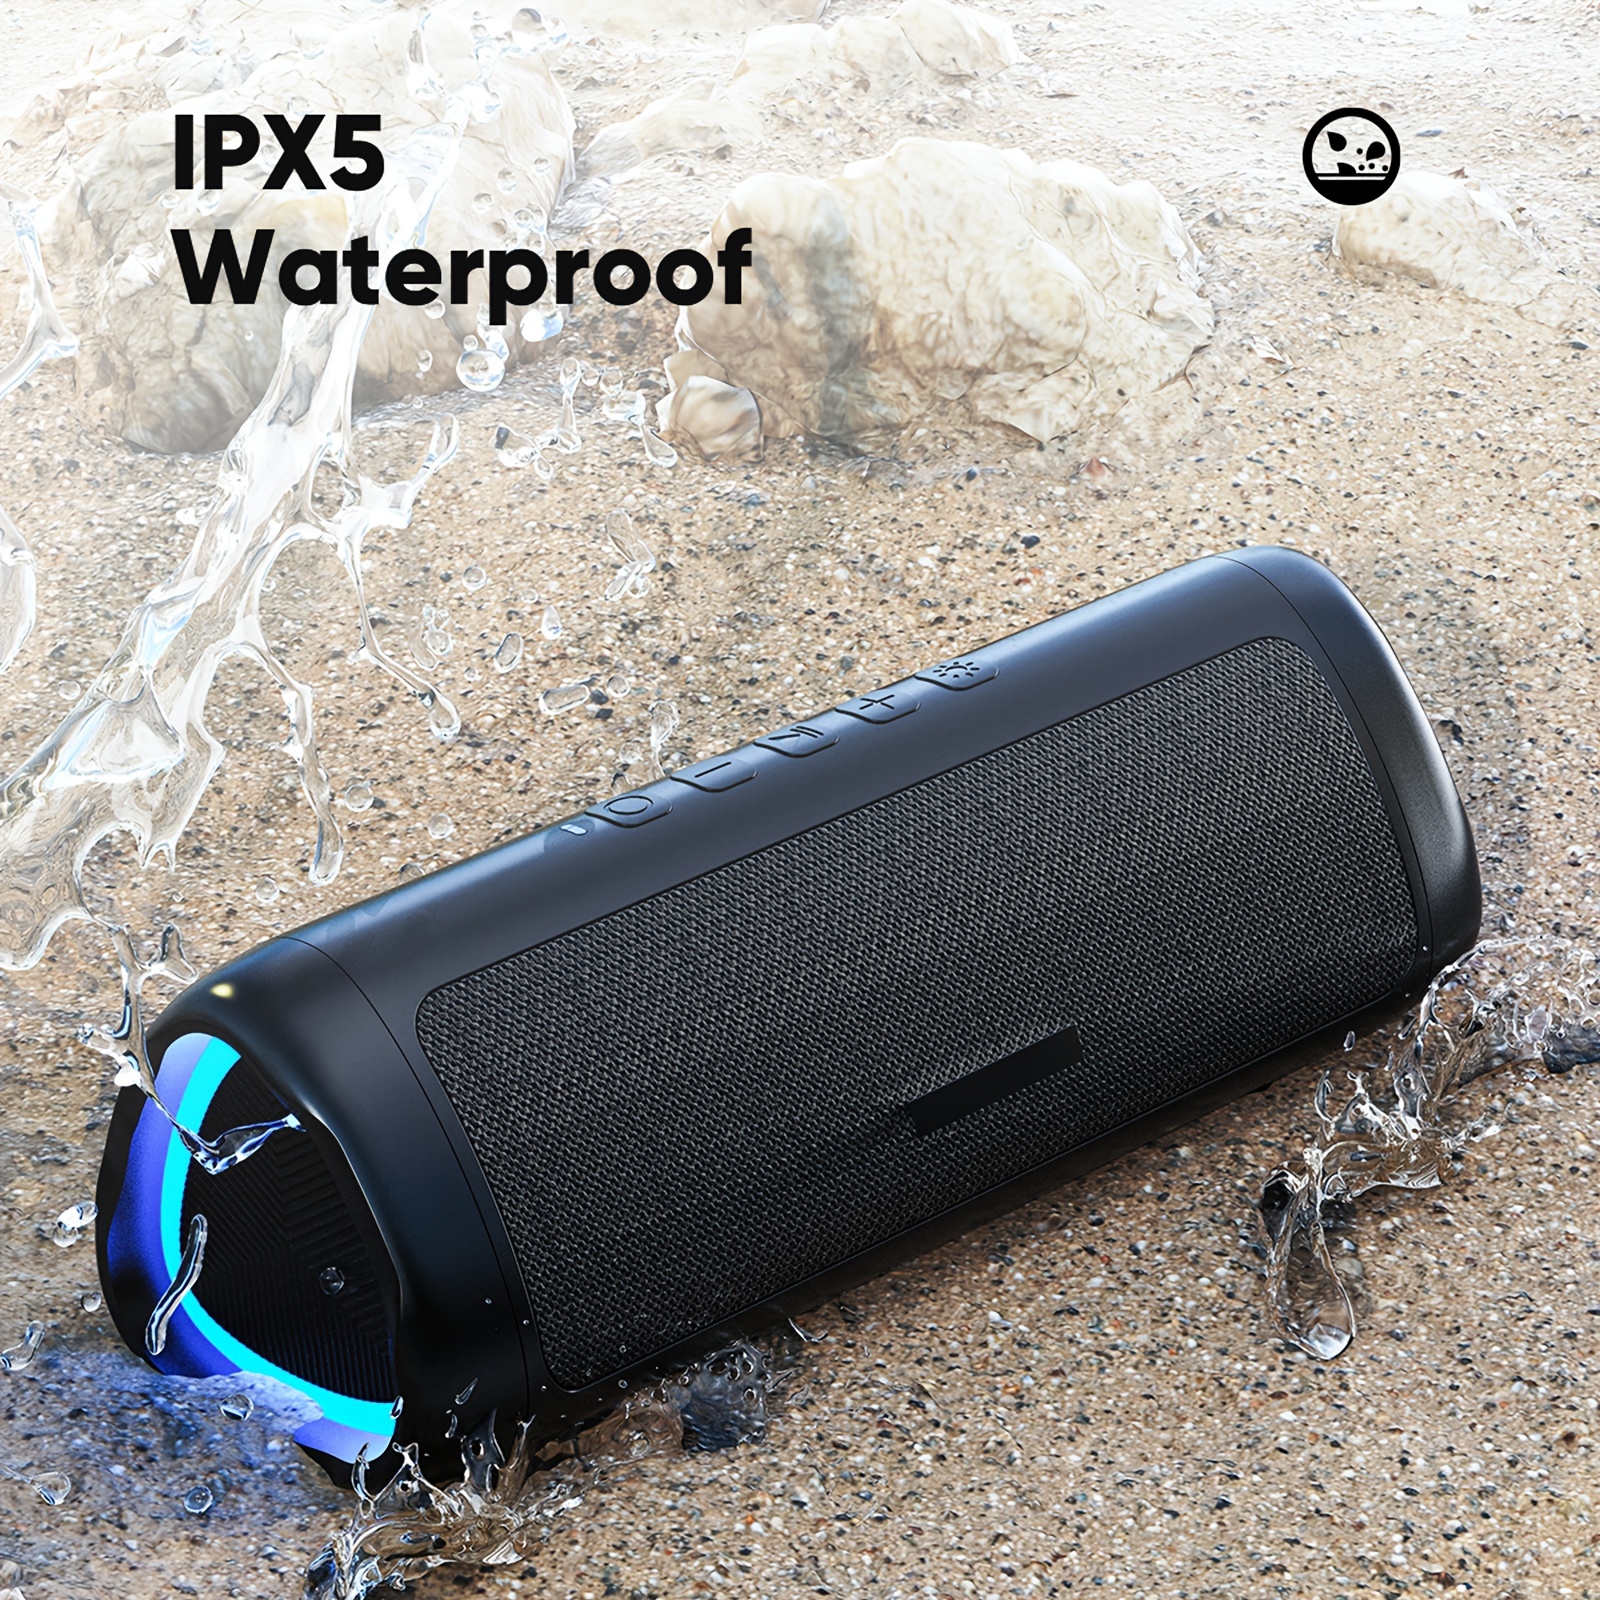  Altavoces Bluetooth, altavoz impermeable IPX7 con sonido  potente de 20 W, altavoces inalámbricos portátiles con graves extrales,  para playa, piscina, campamento, al aire libre, regalo de : Electrónica